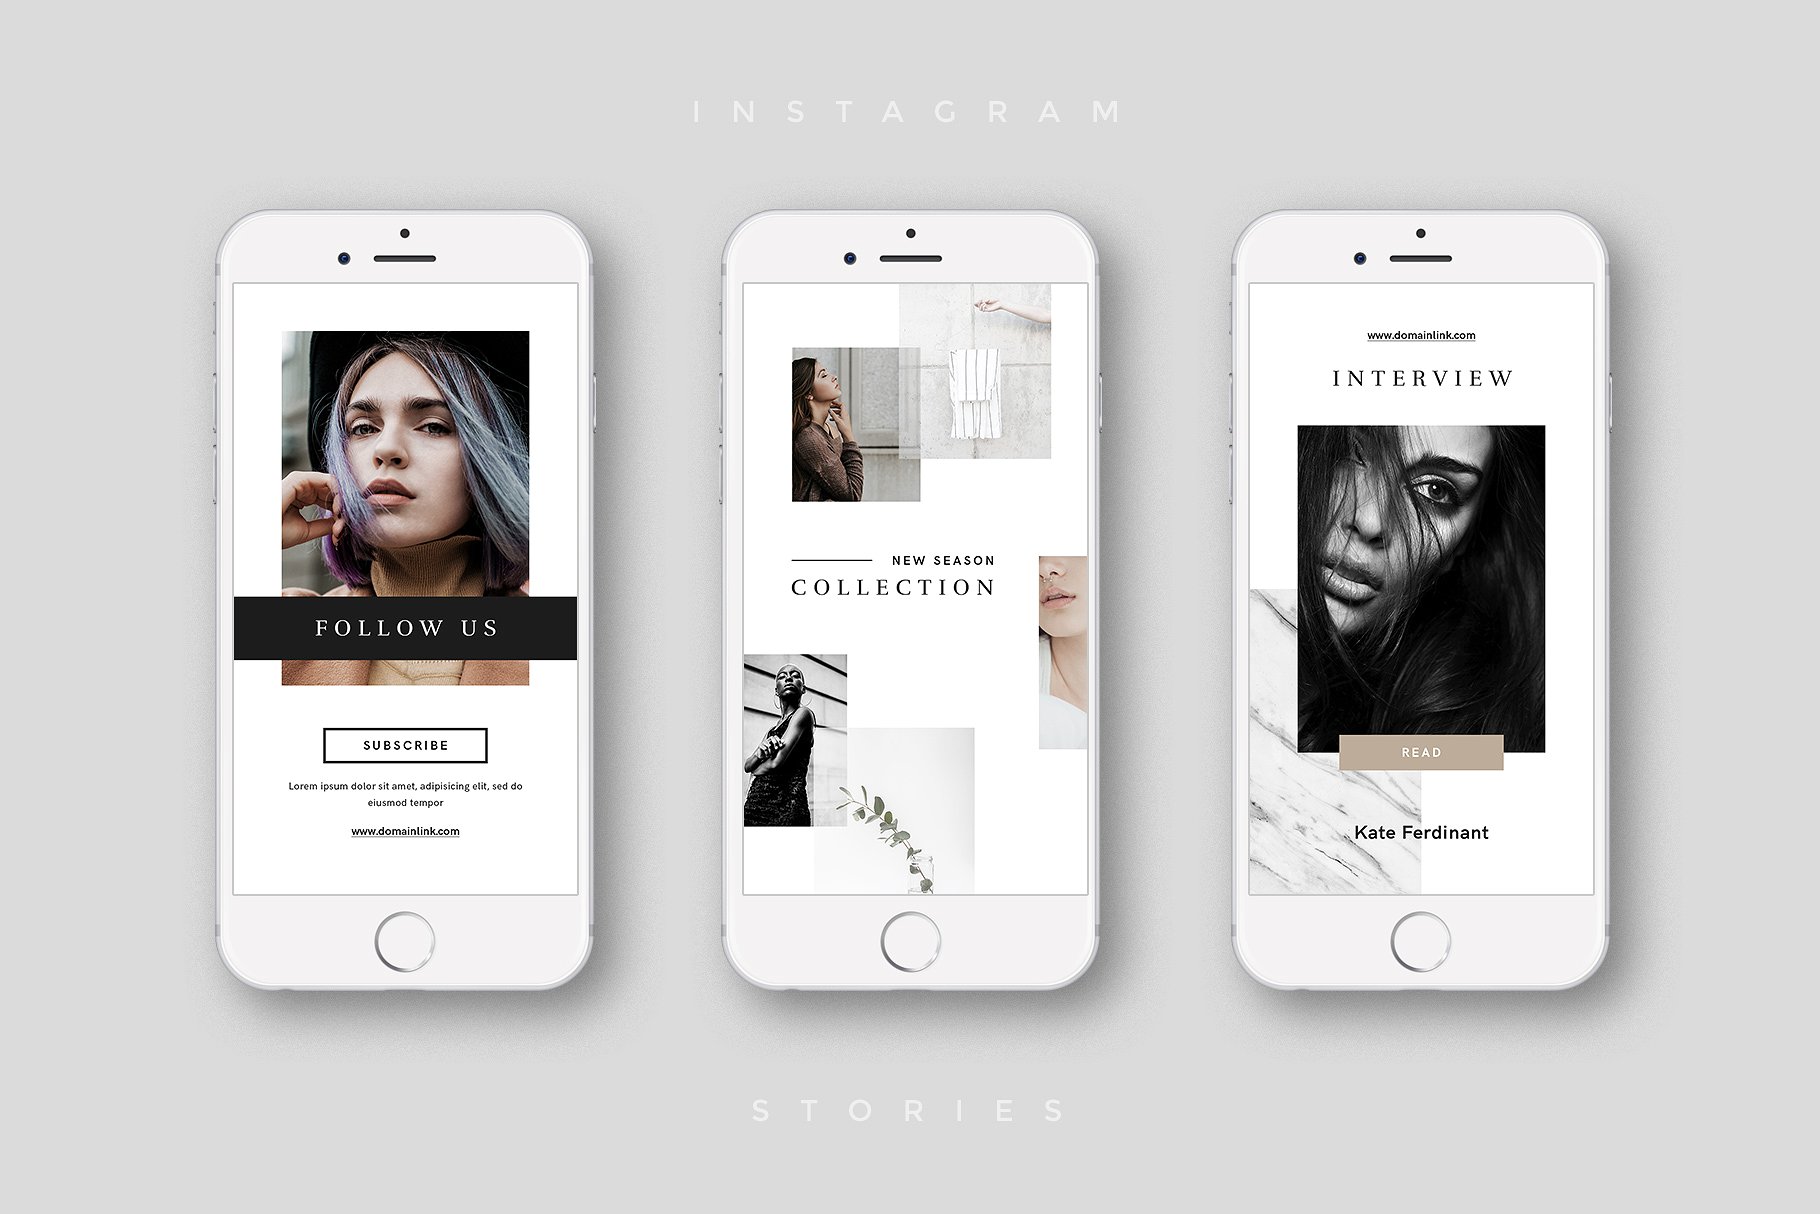 奢侈品电商社交媒体Ins故事贴图模板第一素材精选 Luxury Instagram Stories Pack插图(6)